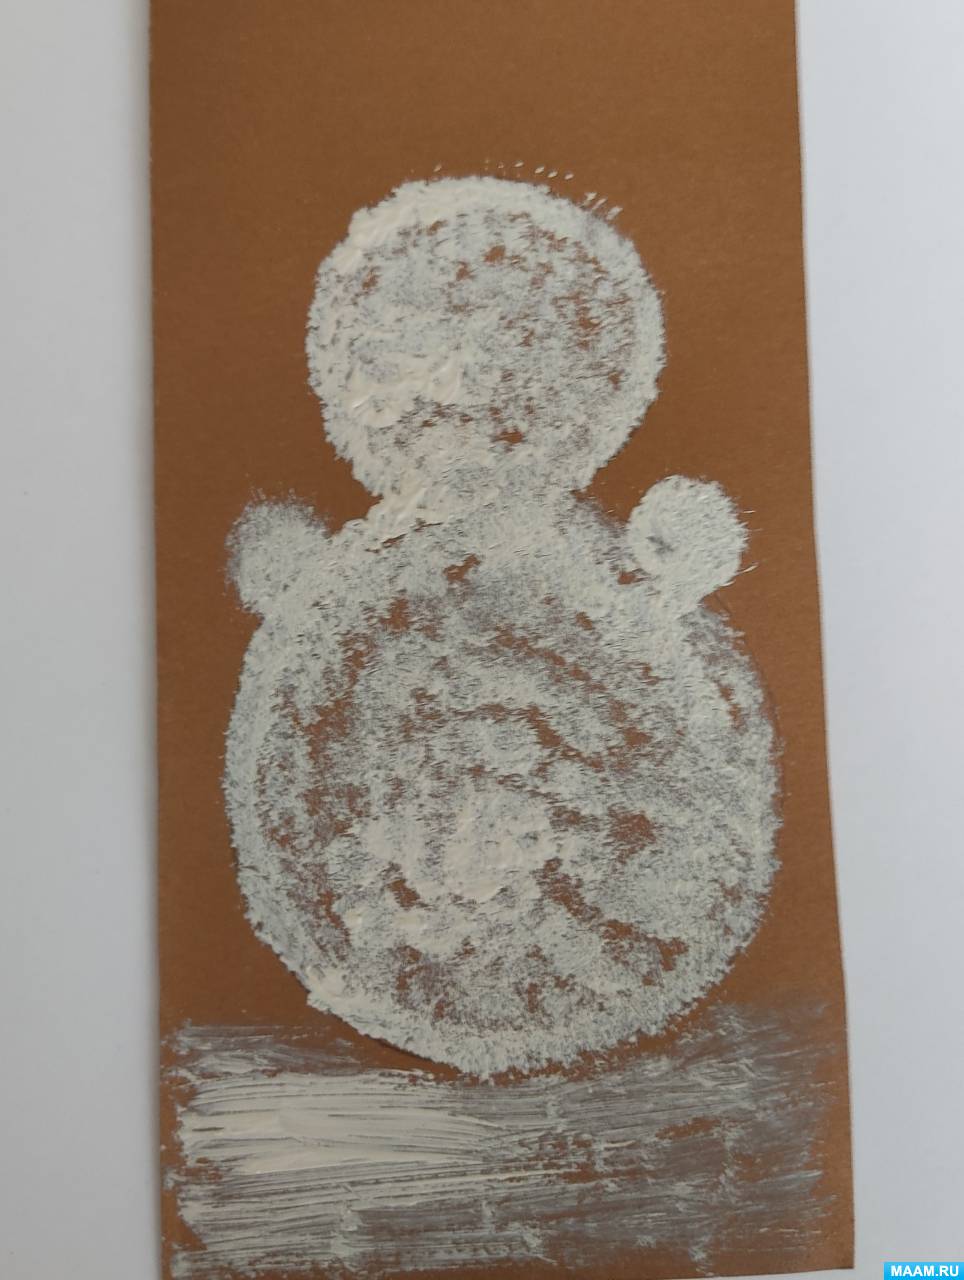 Фото №2 Картон сворачиваем пополам обводим карандашом трафарет и белилами сухой жёсткой кистью тычками прорисовываем контур снеговика